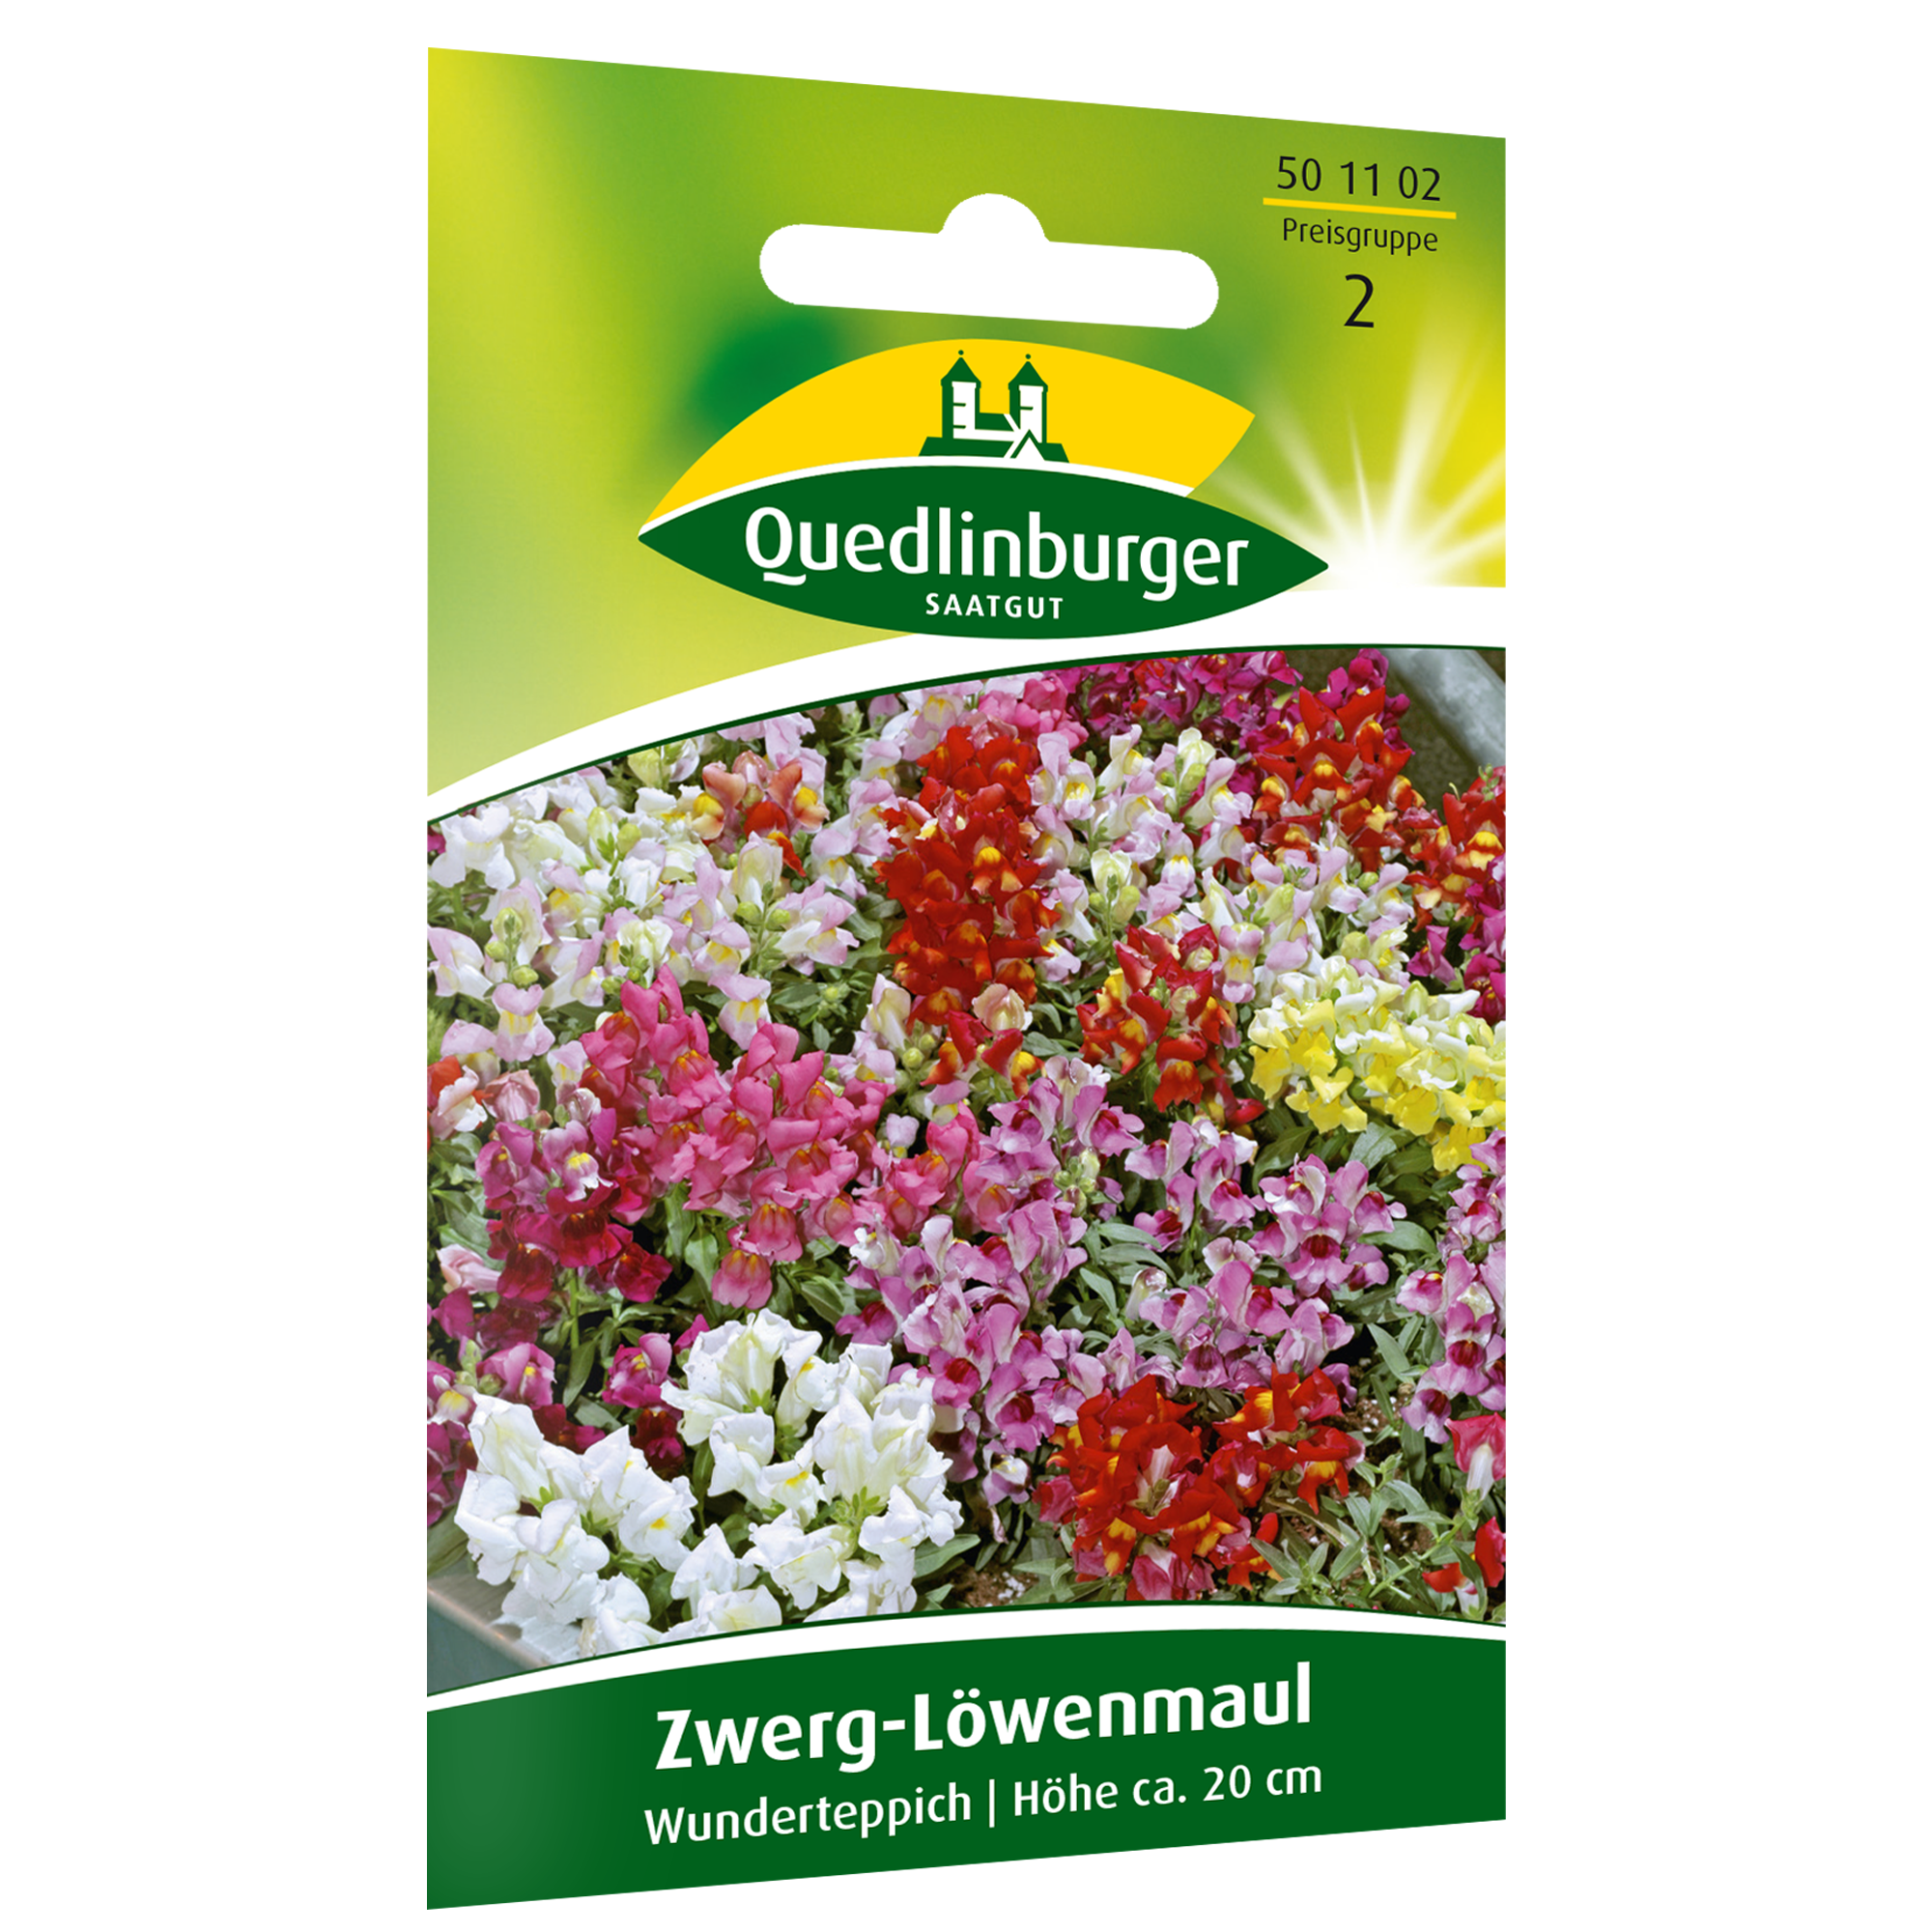 Zwerg-Löwenmaul 'Wunderteppich' + product picture